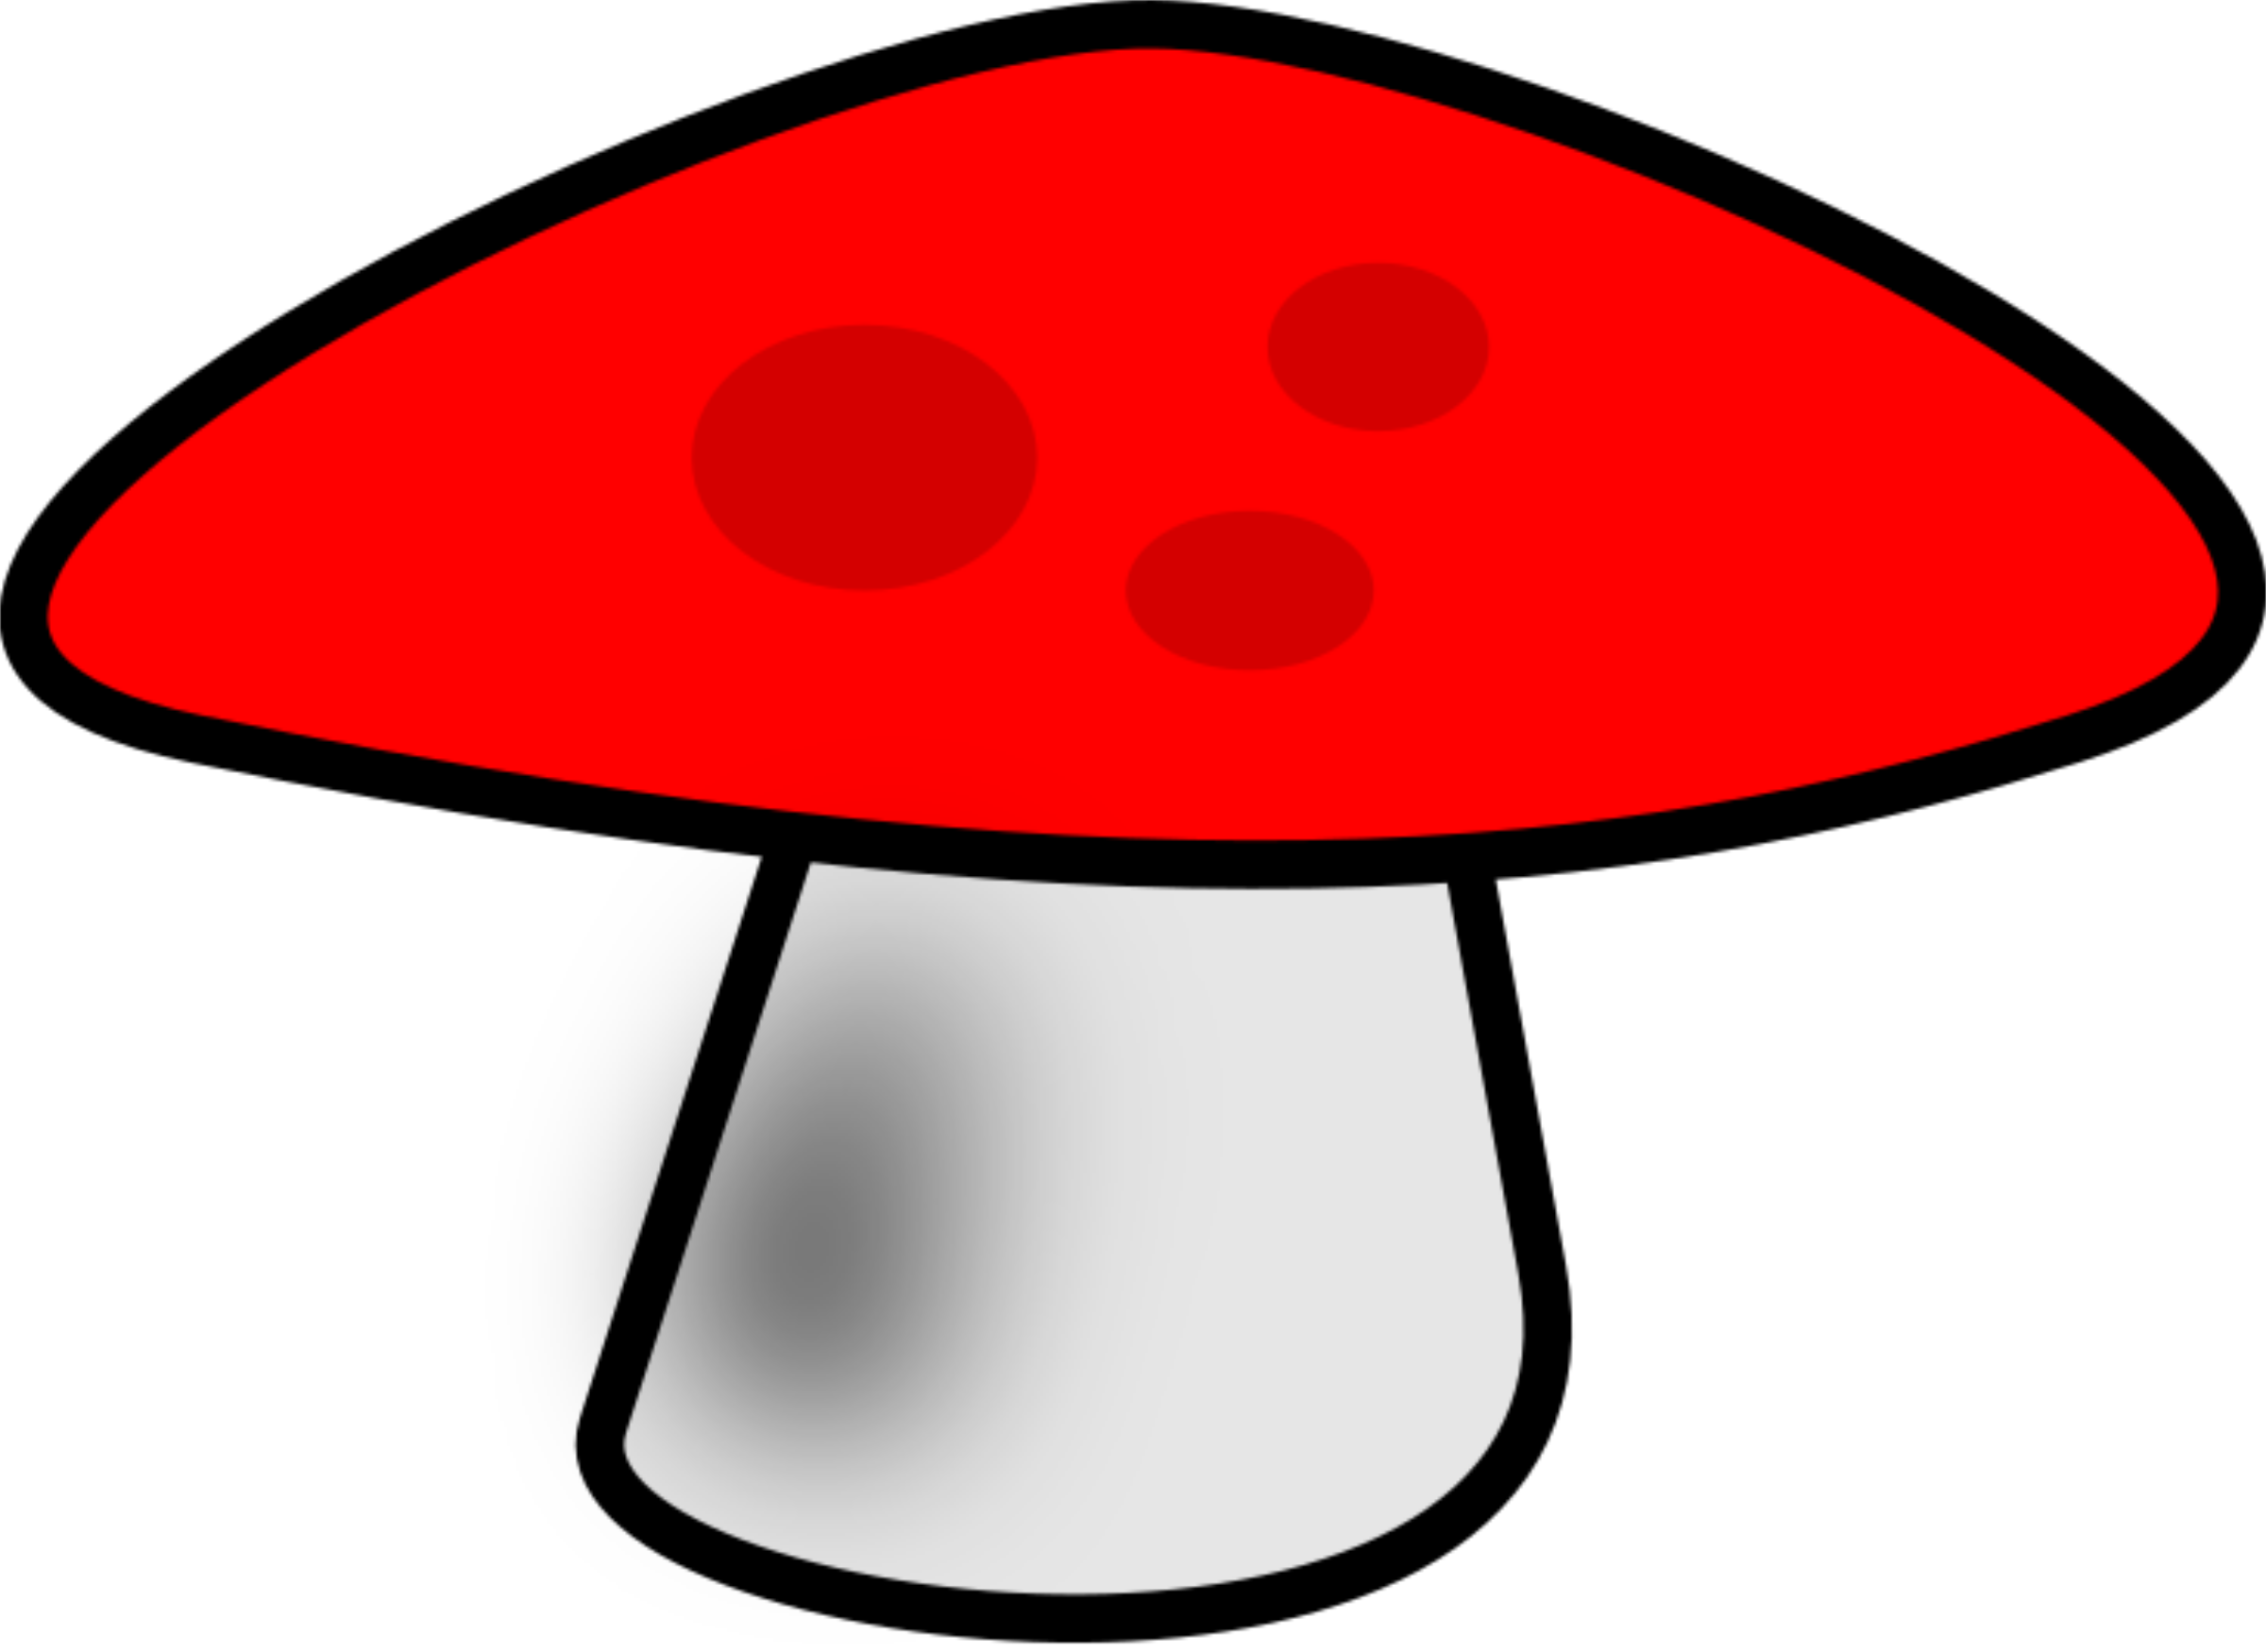 Mushroom red mushroom